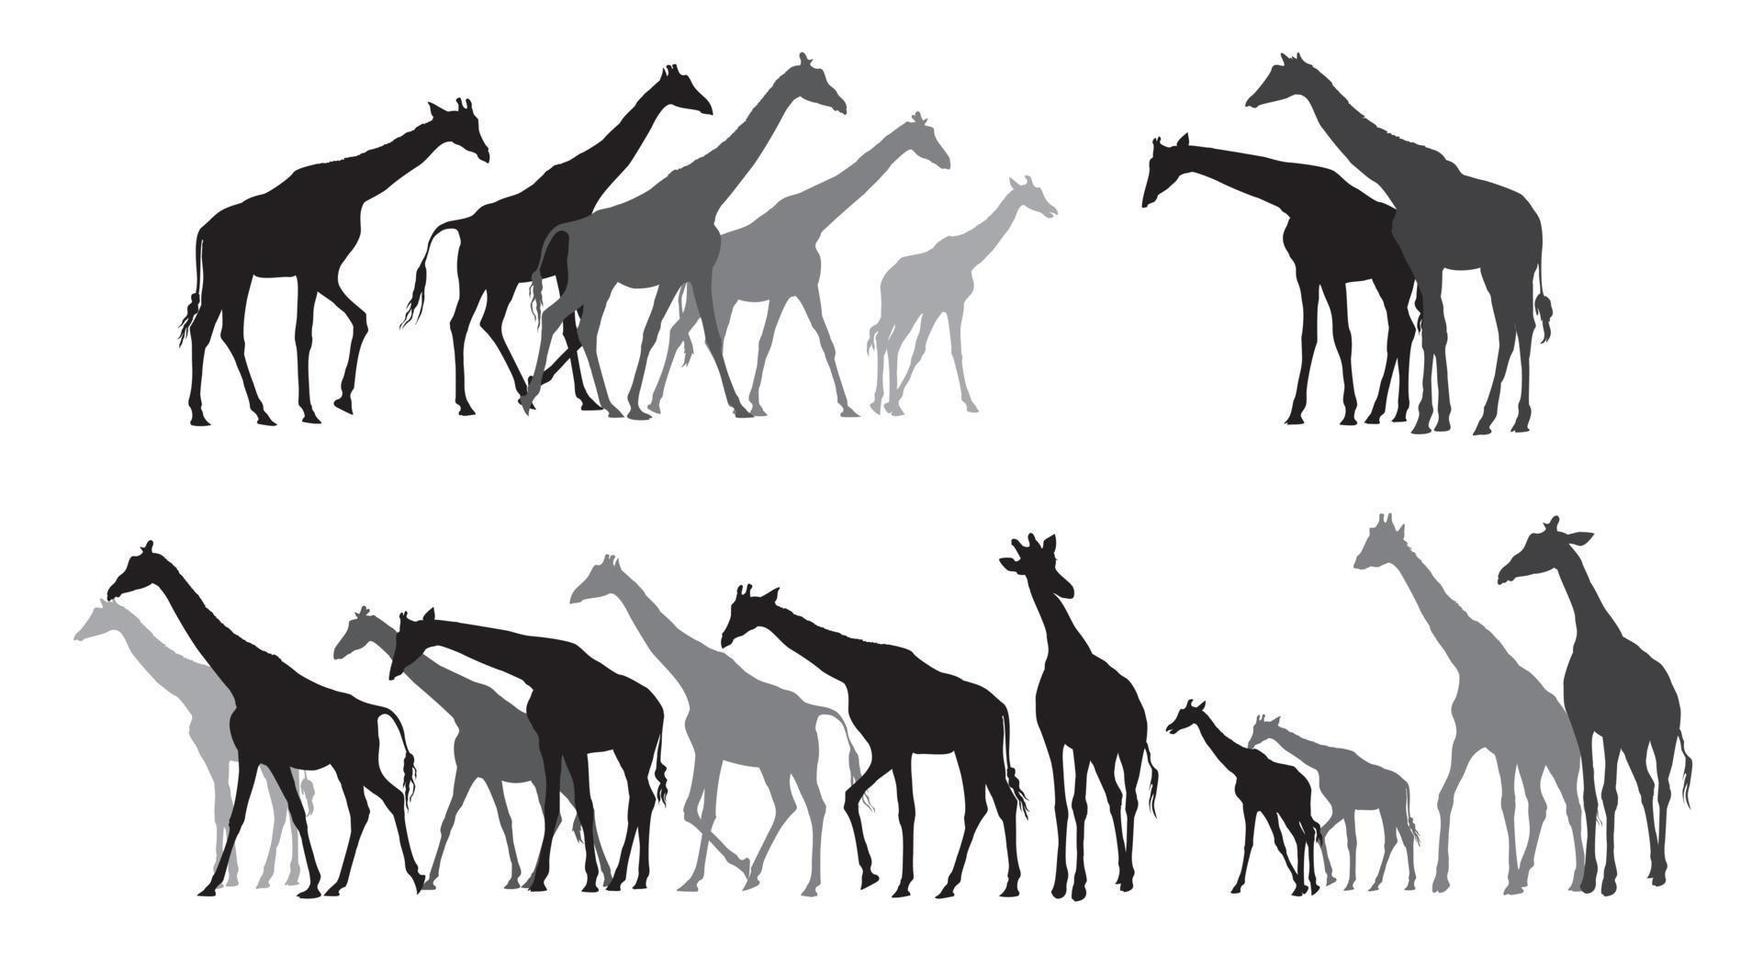 groep van zwart en grijs silhouetten van giraffen vector